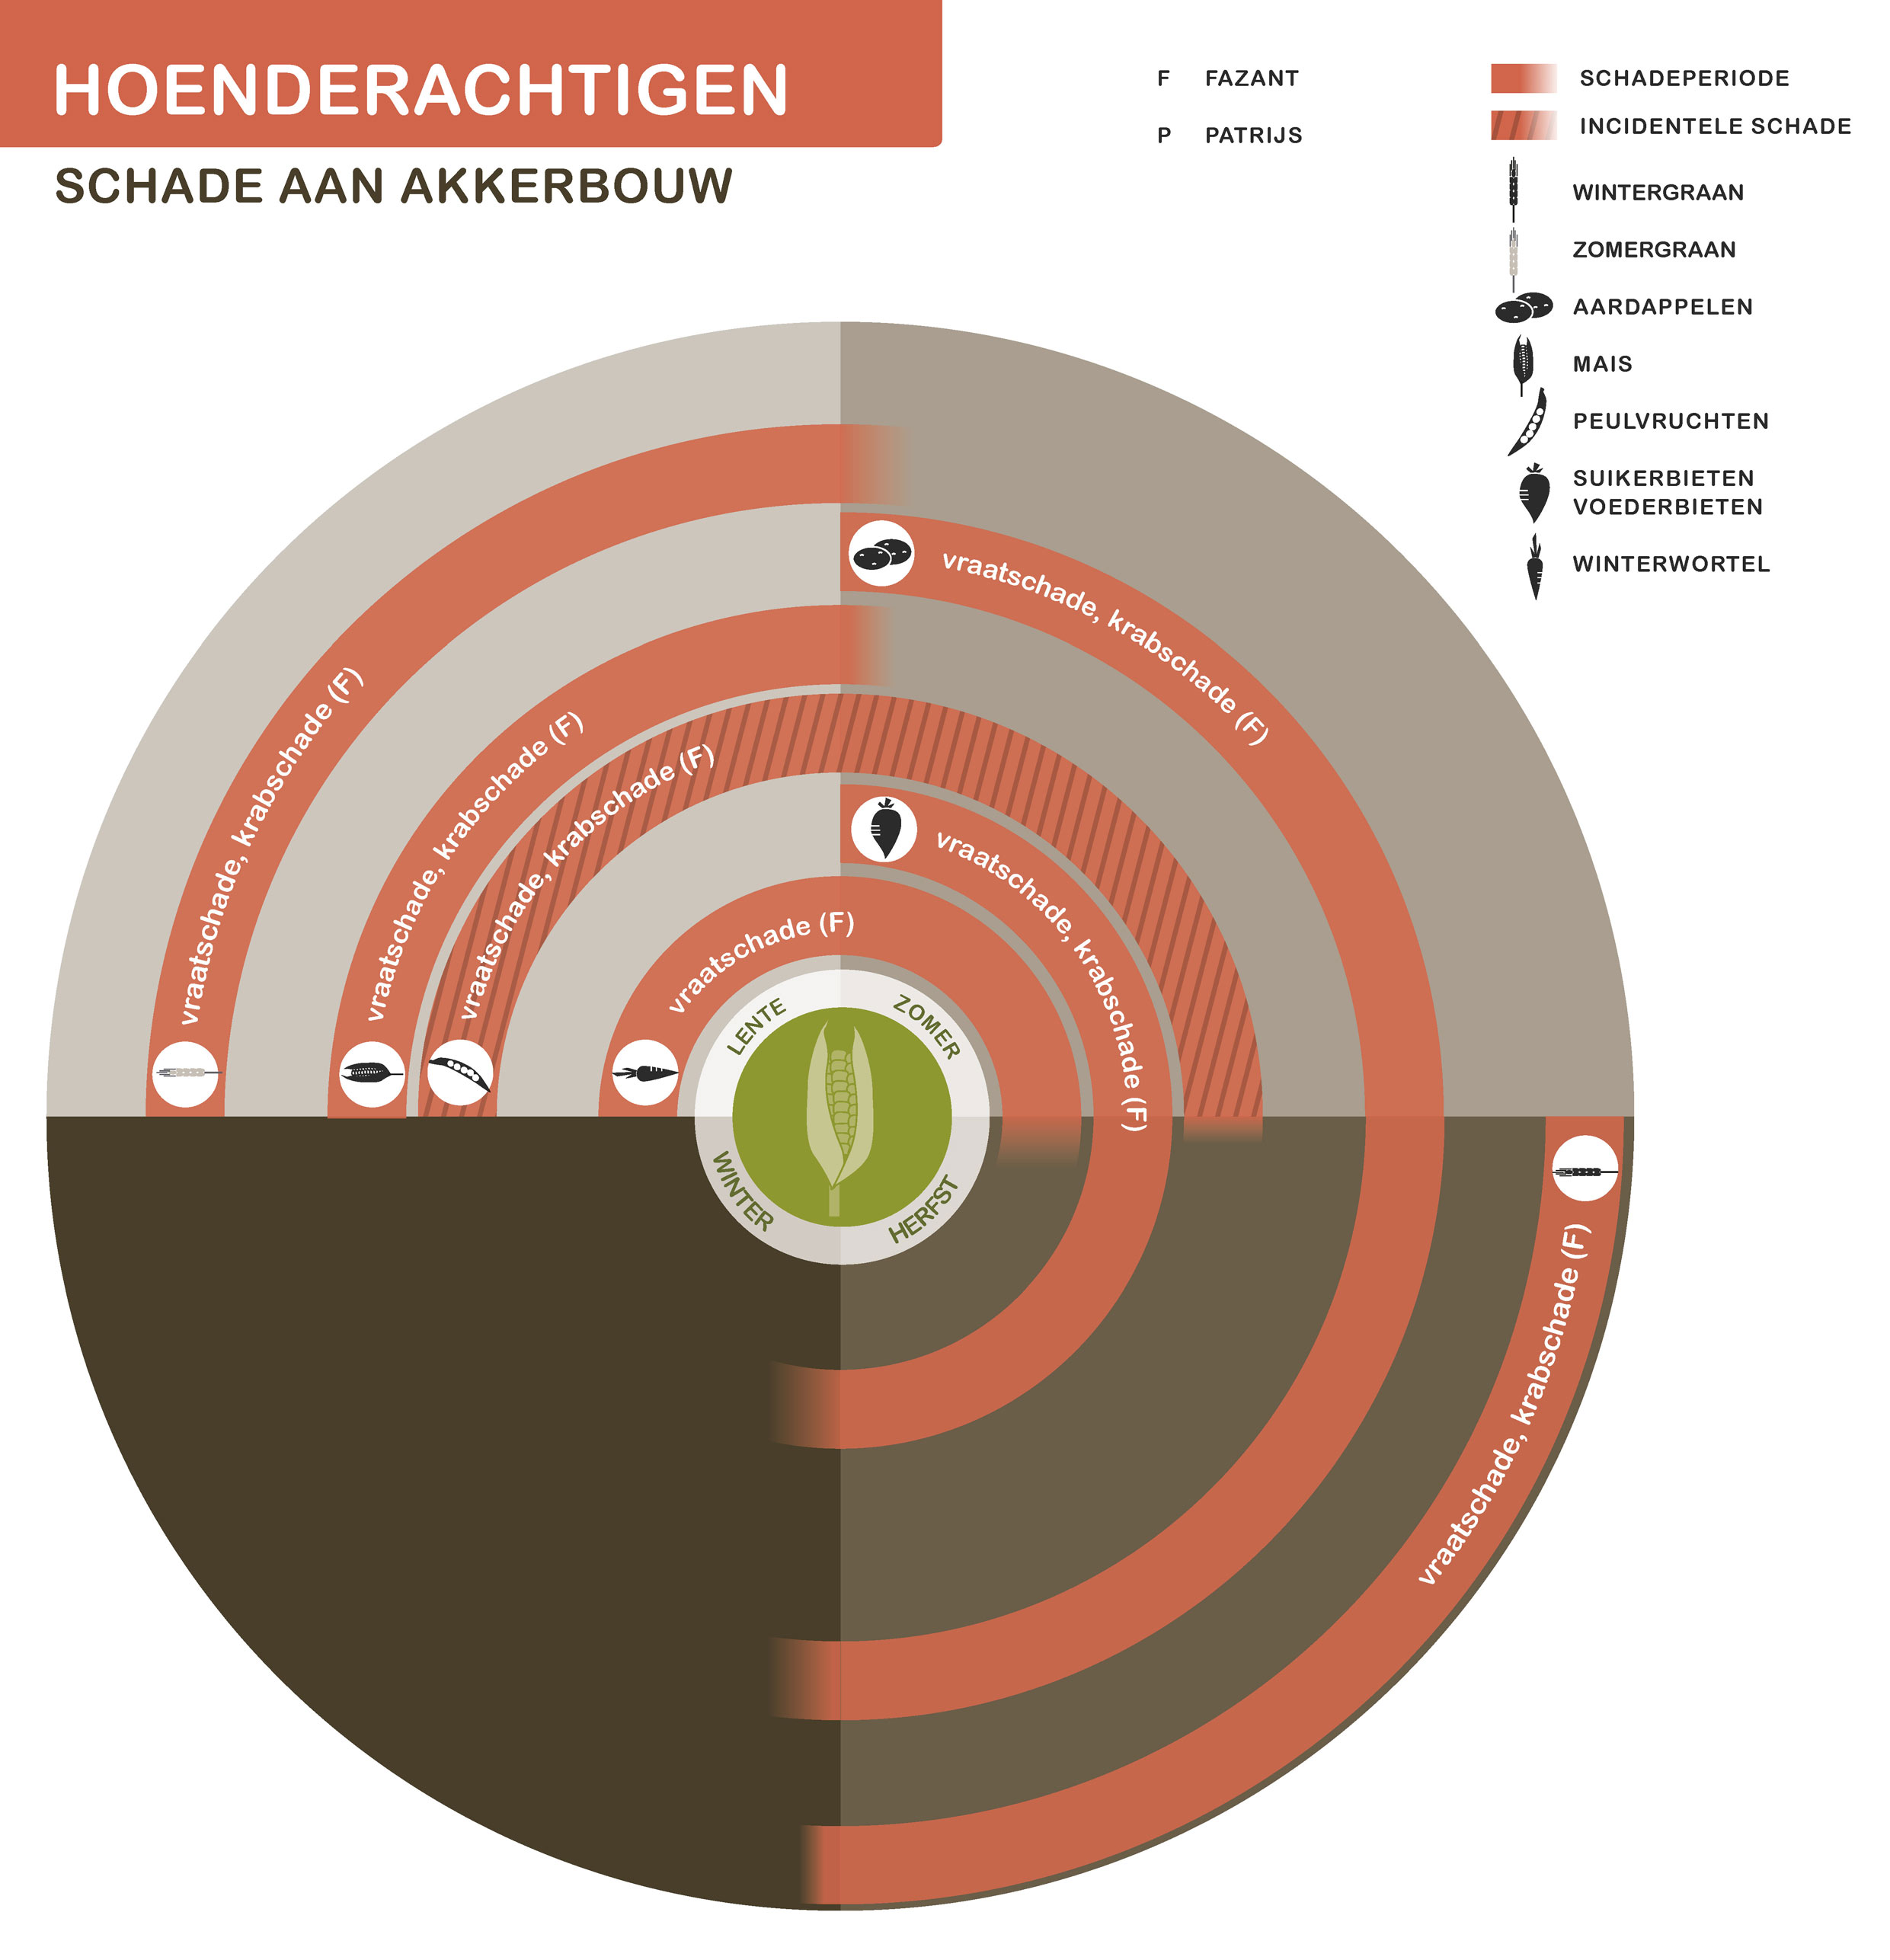 Infographic hoenderachtigen schade aan akkerbouw